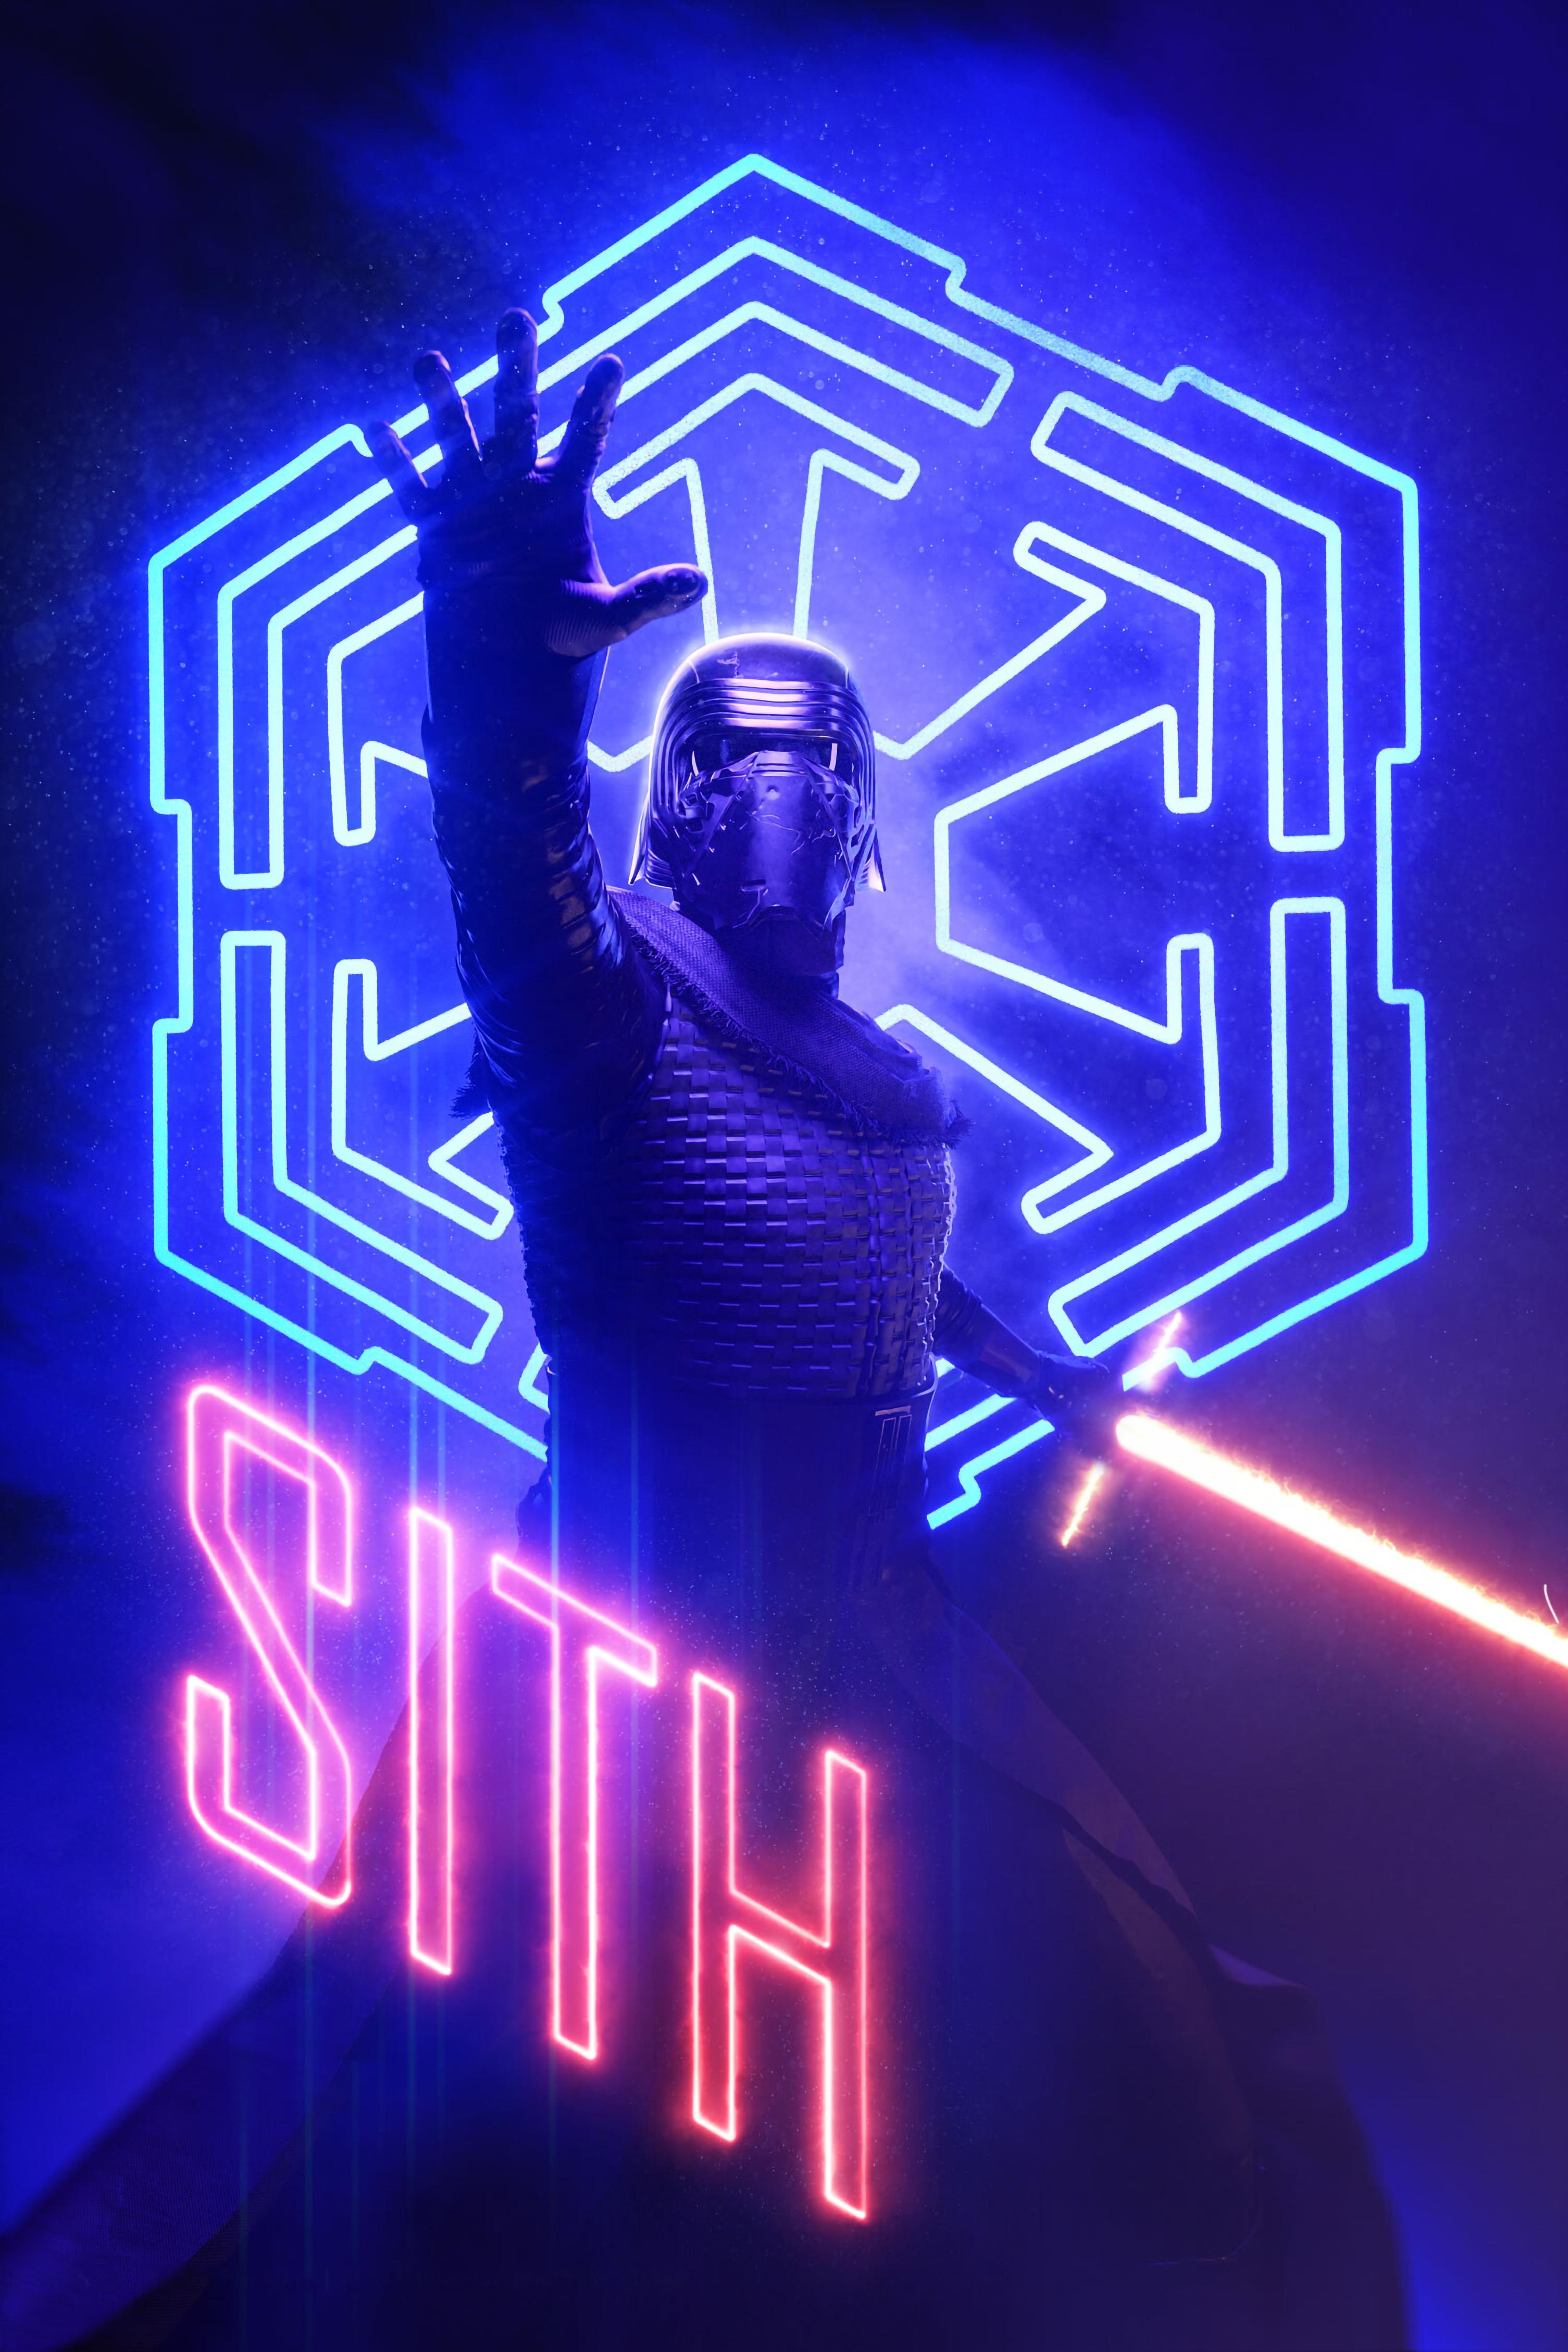 Kylo Ren Star Wars Neon Art Wallpapers